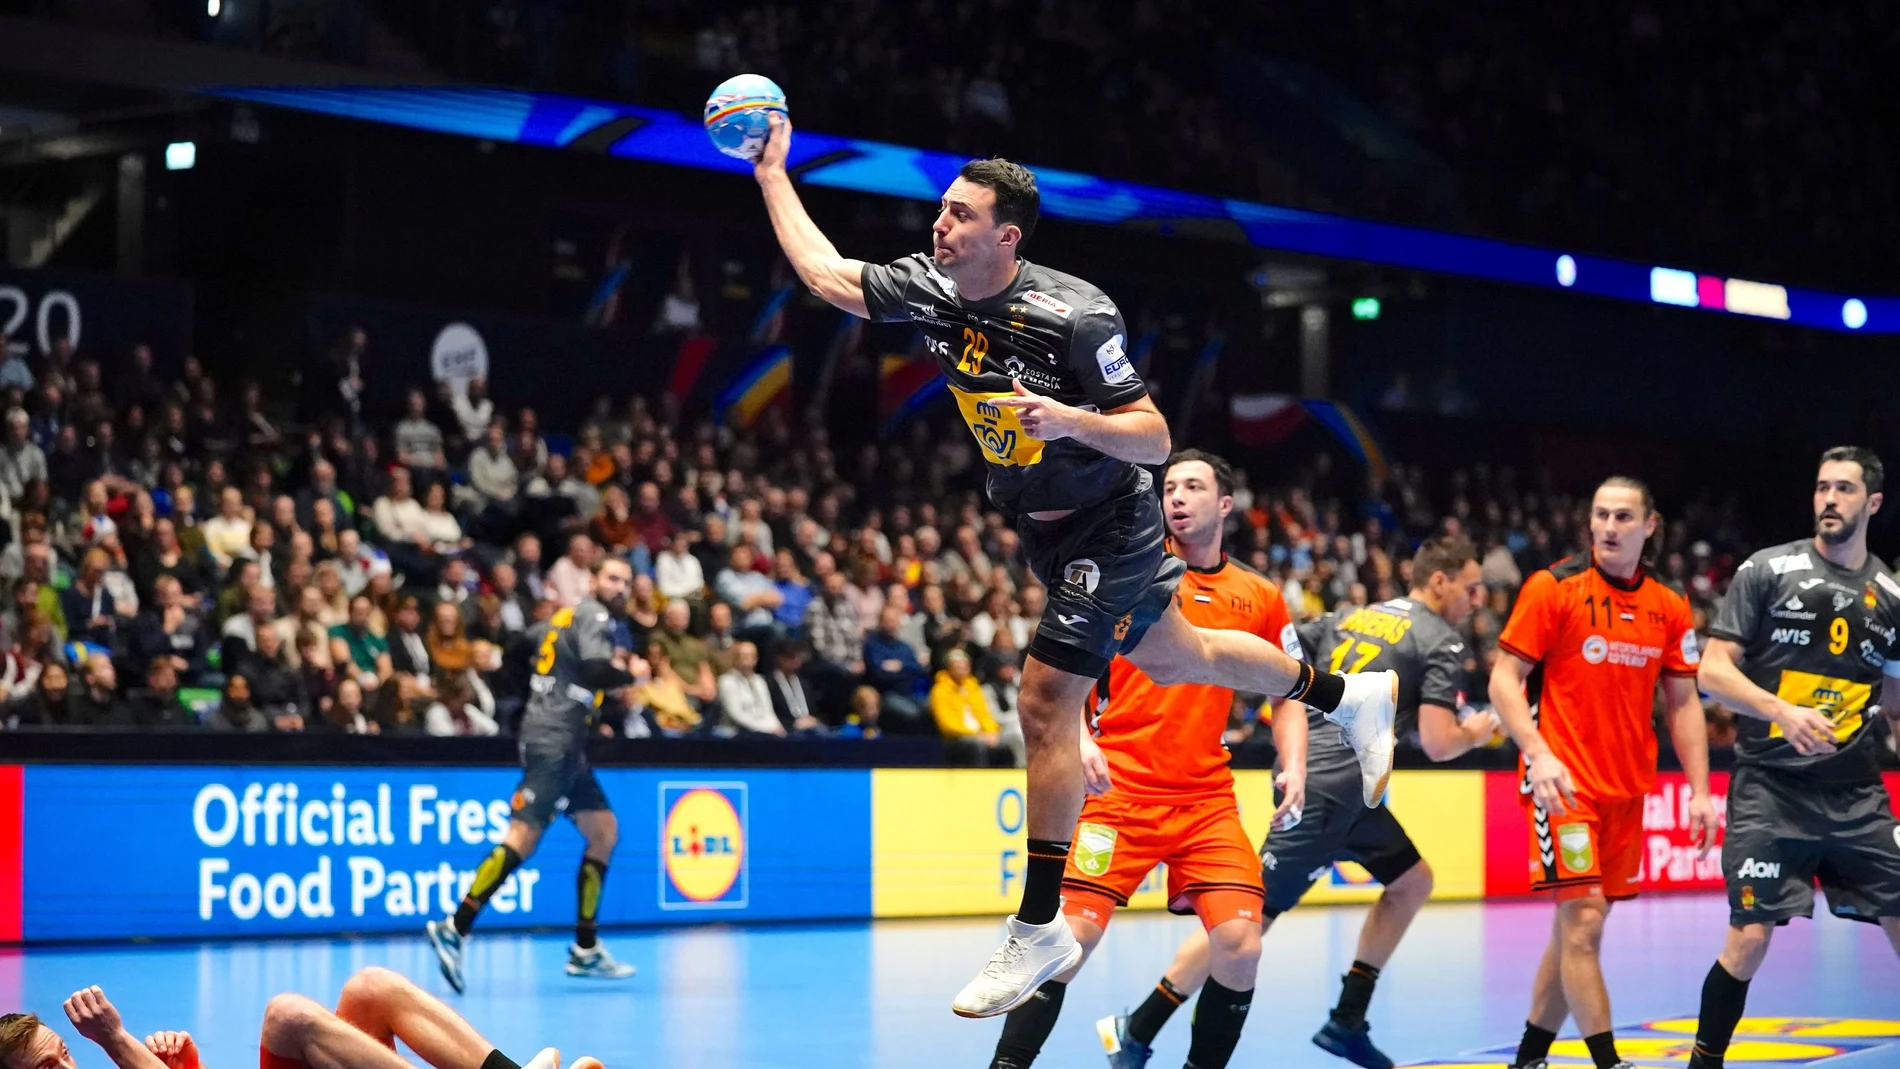 2020 EHF European Men's Handball Championship - Netherlands v Spain